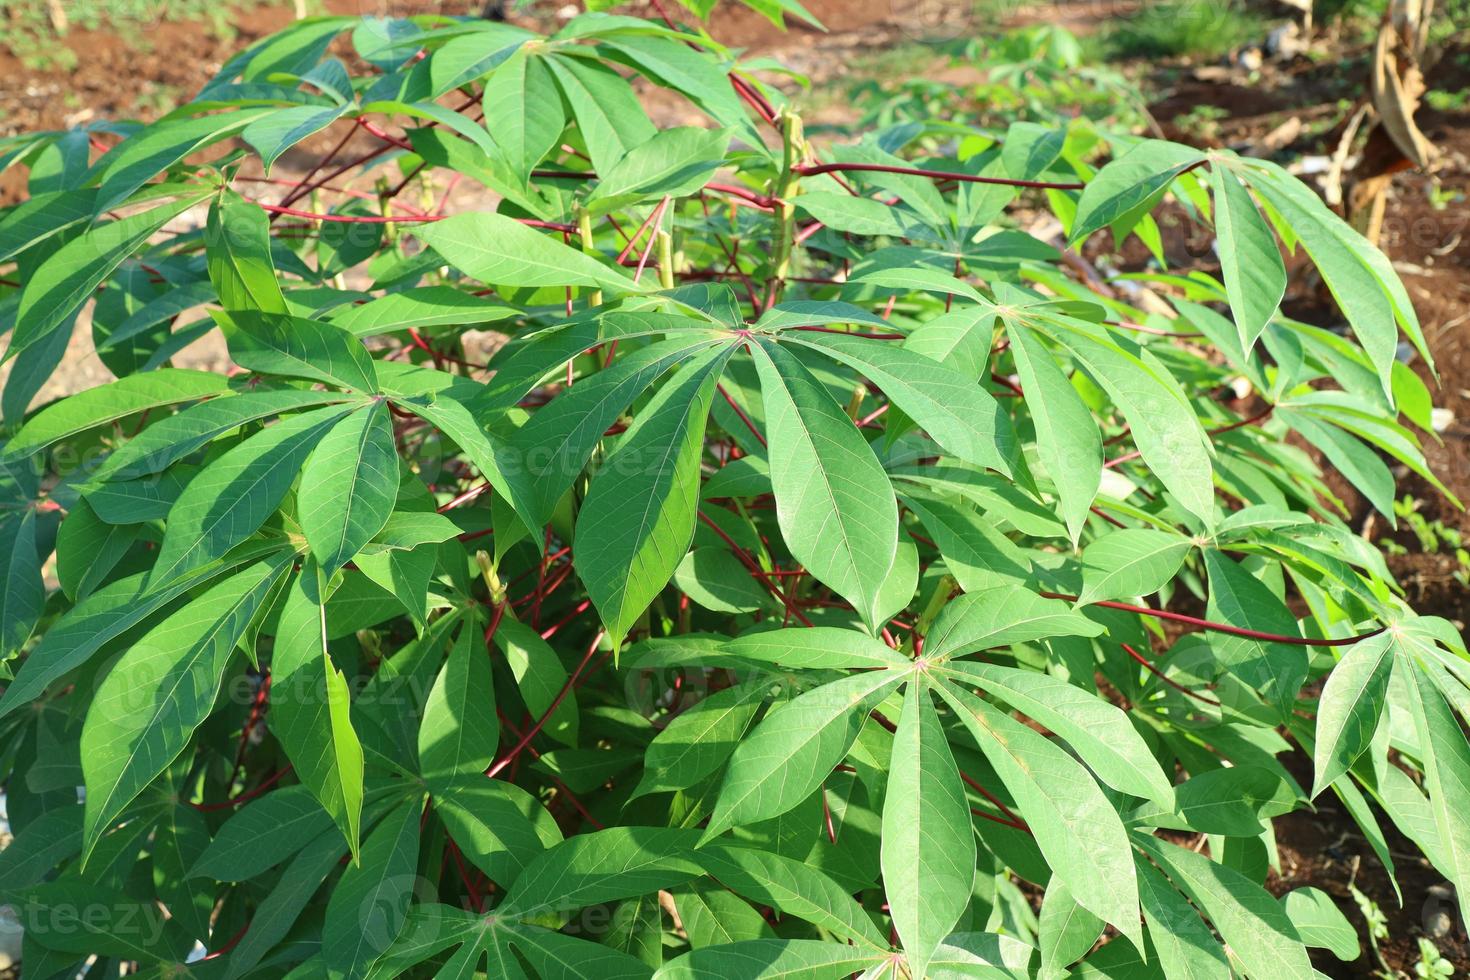 die sattgrünen Blätter der Maniokpflanze foto